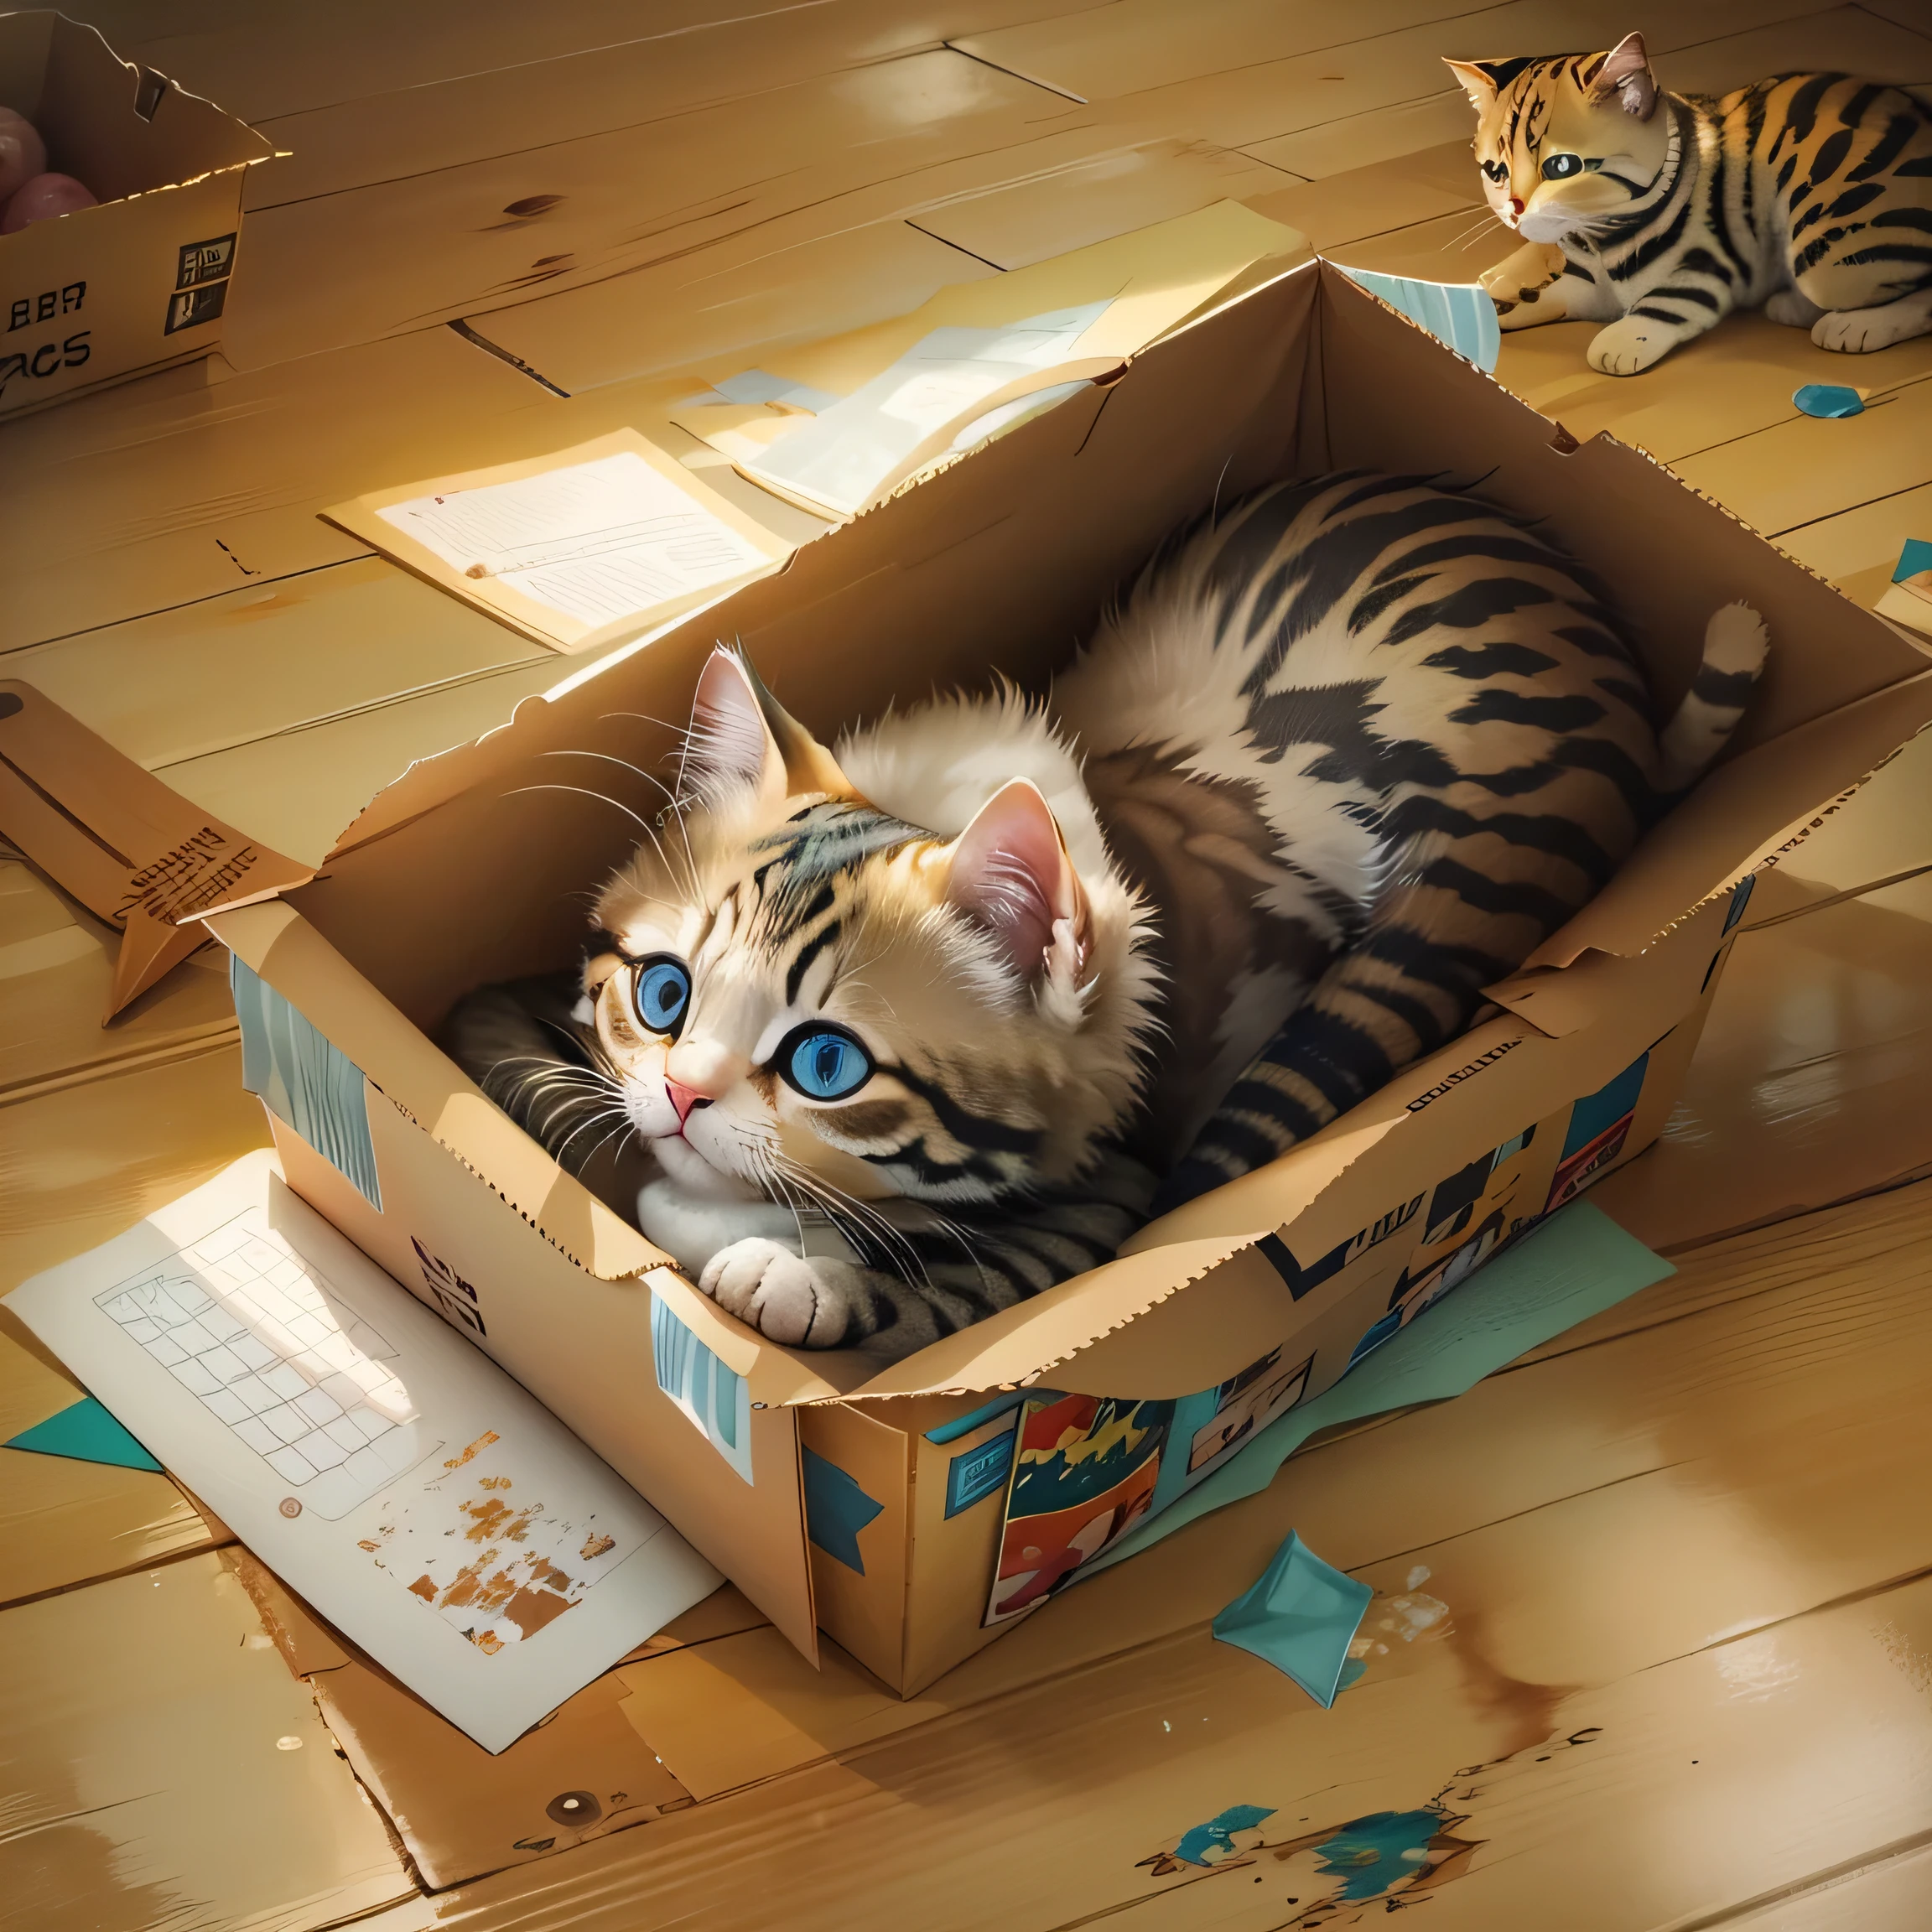 地板上的盒子裡躺著一隻貓., 布萊恩·托馬斯的寫實畫作, 不倒翁, 照片寫實主義, 可愛的貓, 可愛的數位繪畫, 可愛的小貓, 可愛的貓 photo, 有史以來最可愛的小貓, 美麗又可愛, 可愛又可愛, a 可愛的貓, 可愛的小貓, 可愛的動物, 可愛的貓, 有着可爱的眼睛